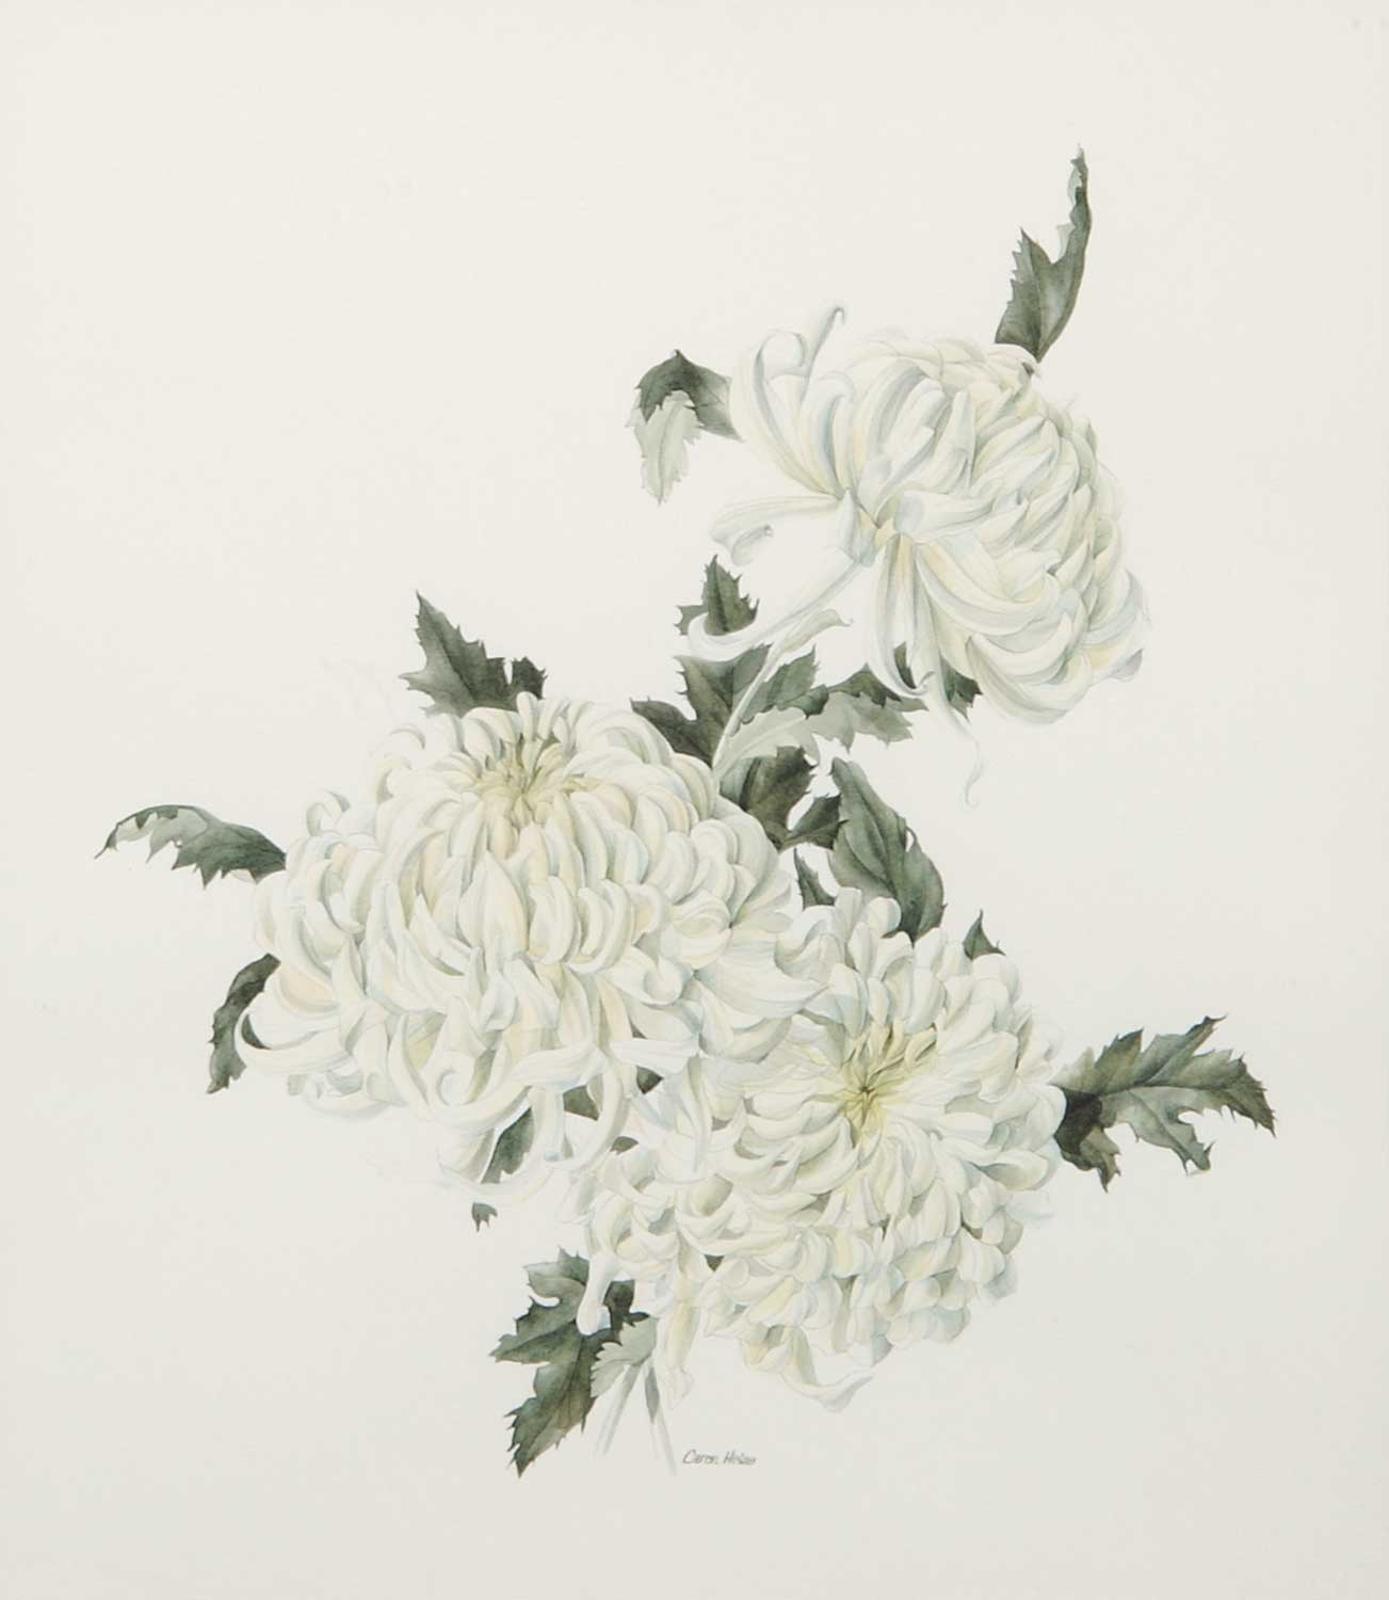 Caren Heine (1958) - White Chrysanthemums